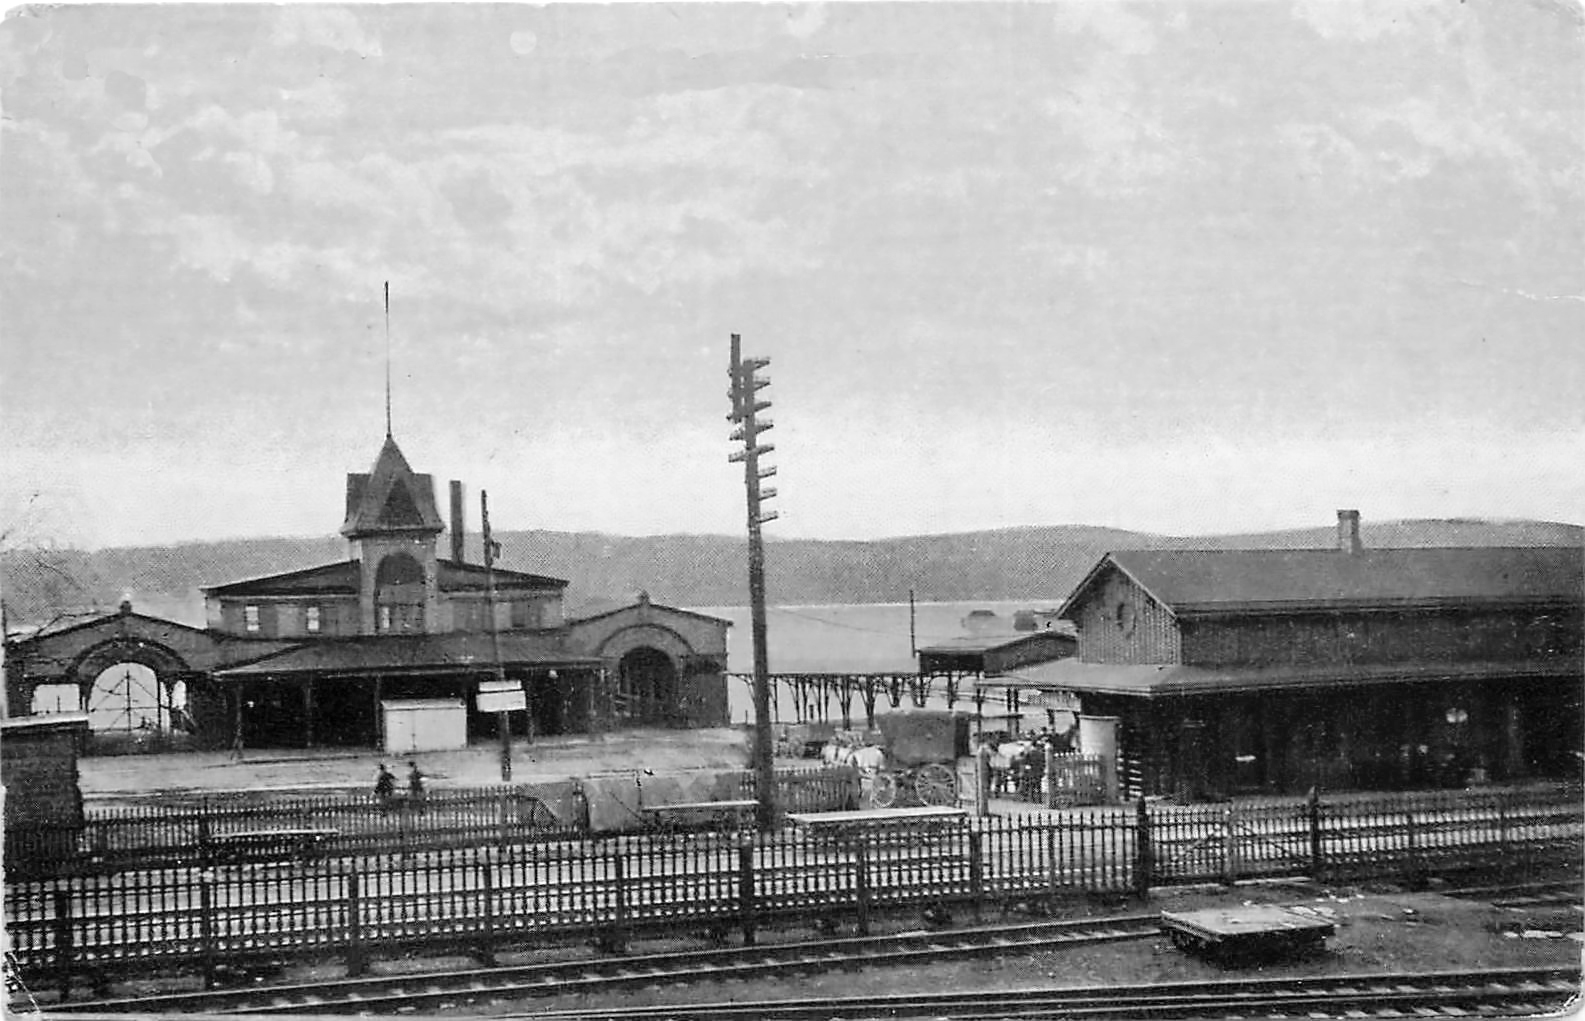 Ferry & Train Station, Fishkill Landing (Beacon) NY, Dutchess County c1910